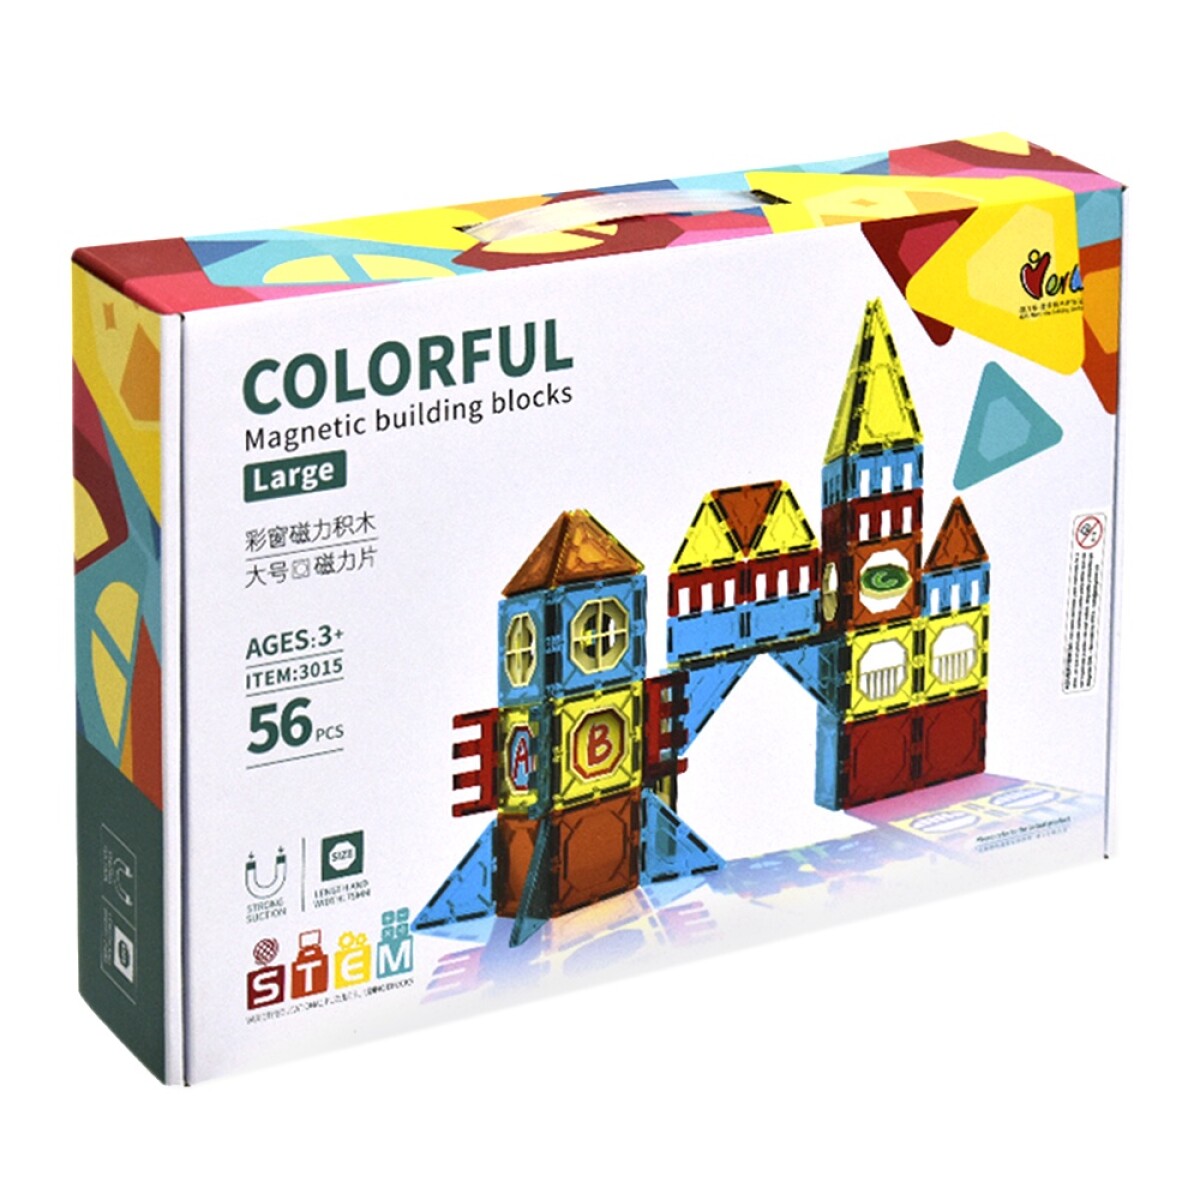 Bloques de Construcción Magnéticos Coloridos y Grandes de 56 Piezas - Multicolor 